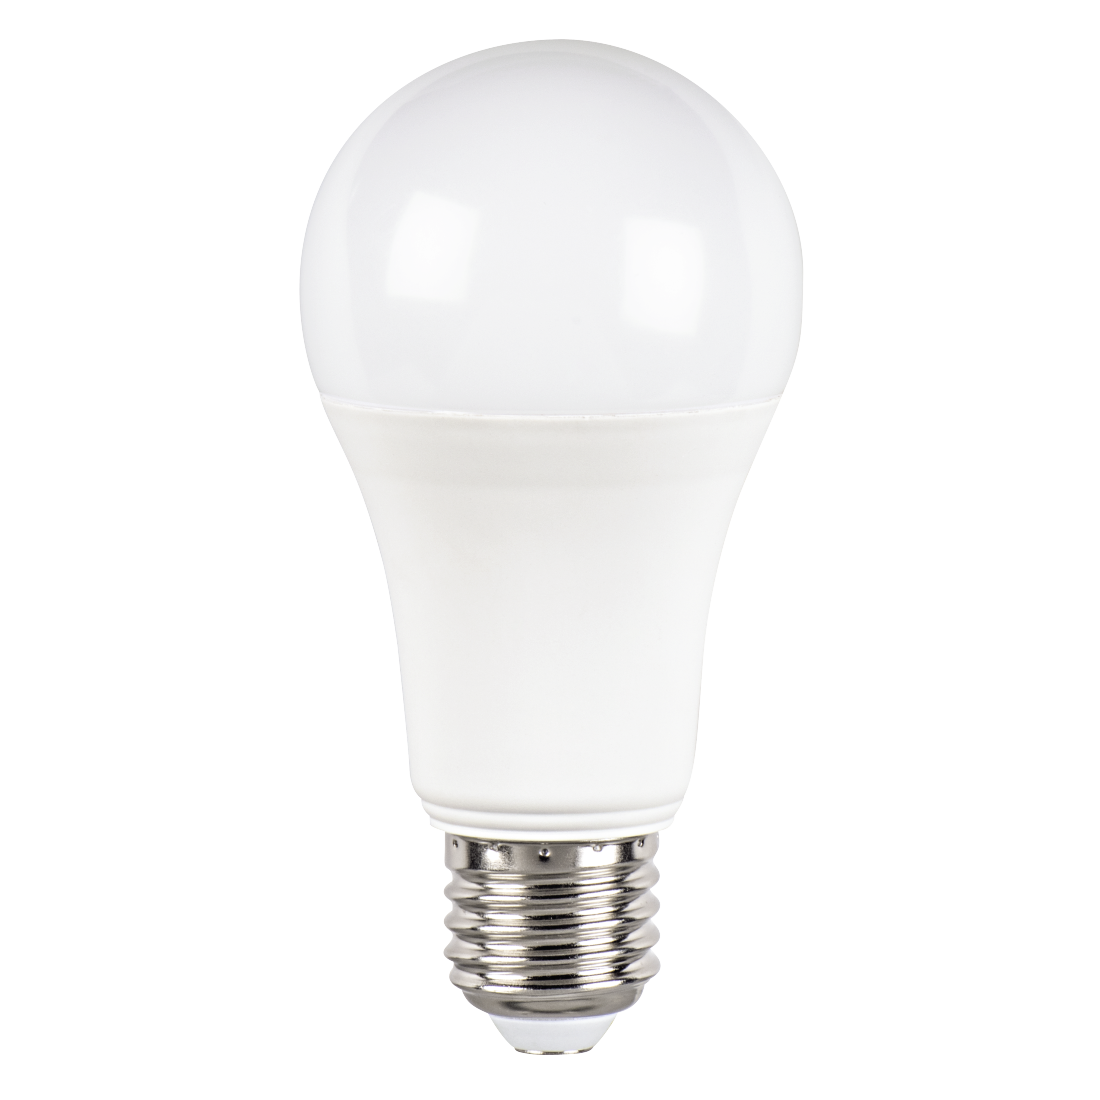 abx High-Res Image - Xavax, Ampoule LED, E27, 1521lm rempl. ampoule incandes. 100W, lumière du jour